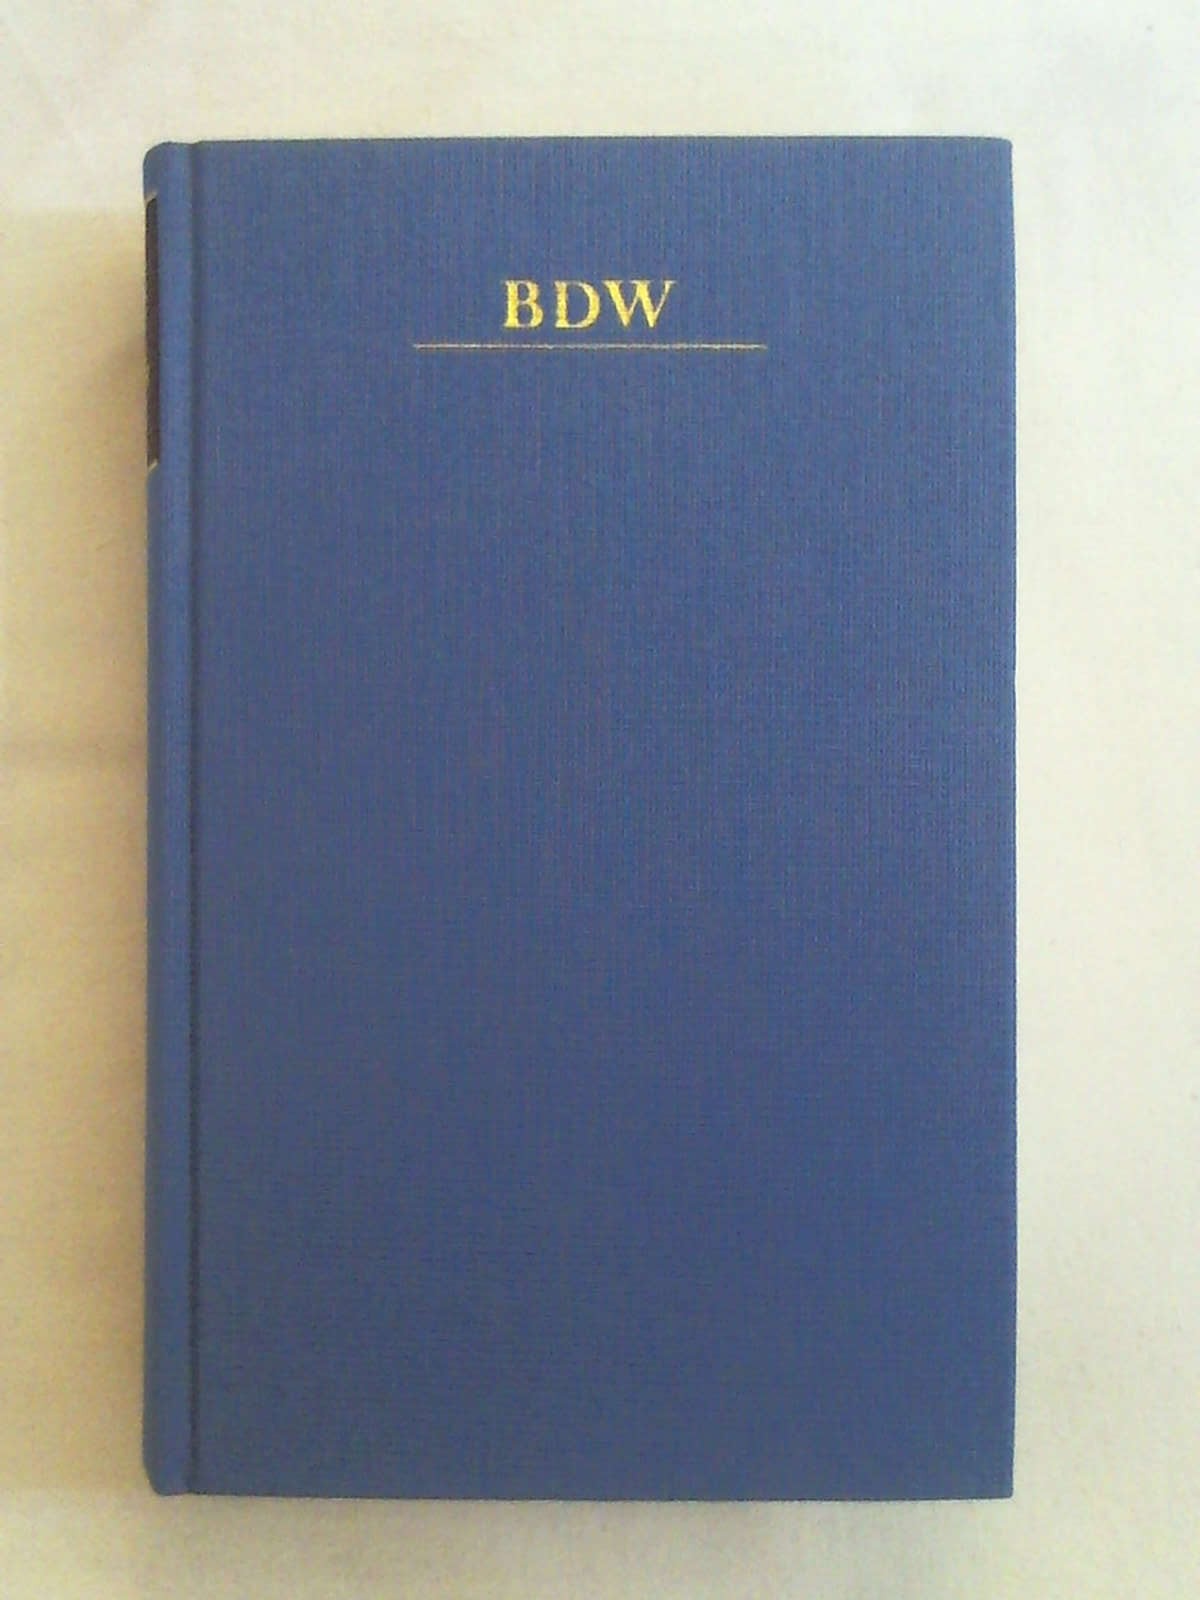 Bibliothek der Weltliteratur BDW: Gedichte. - Johann W von Goethe